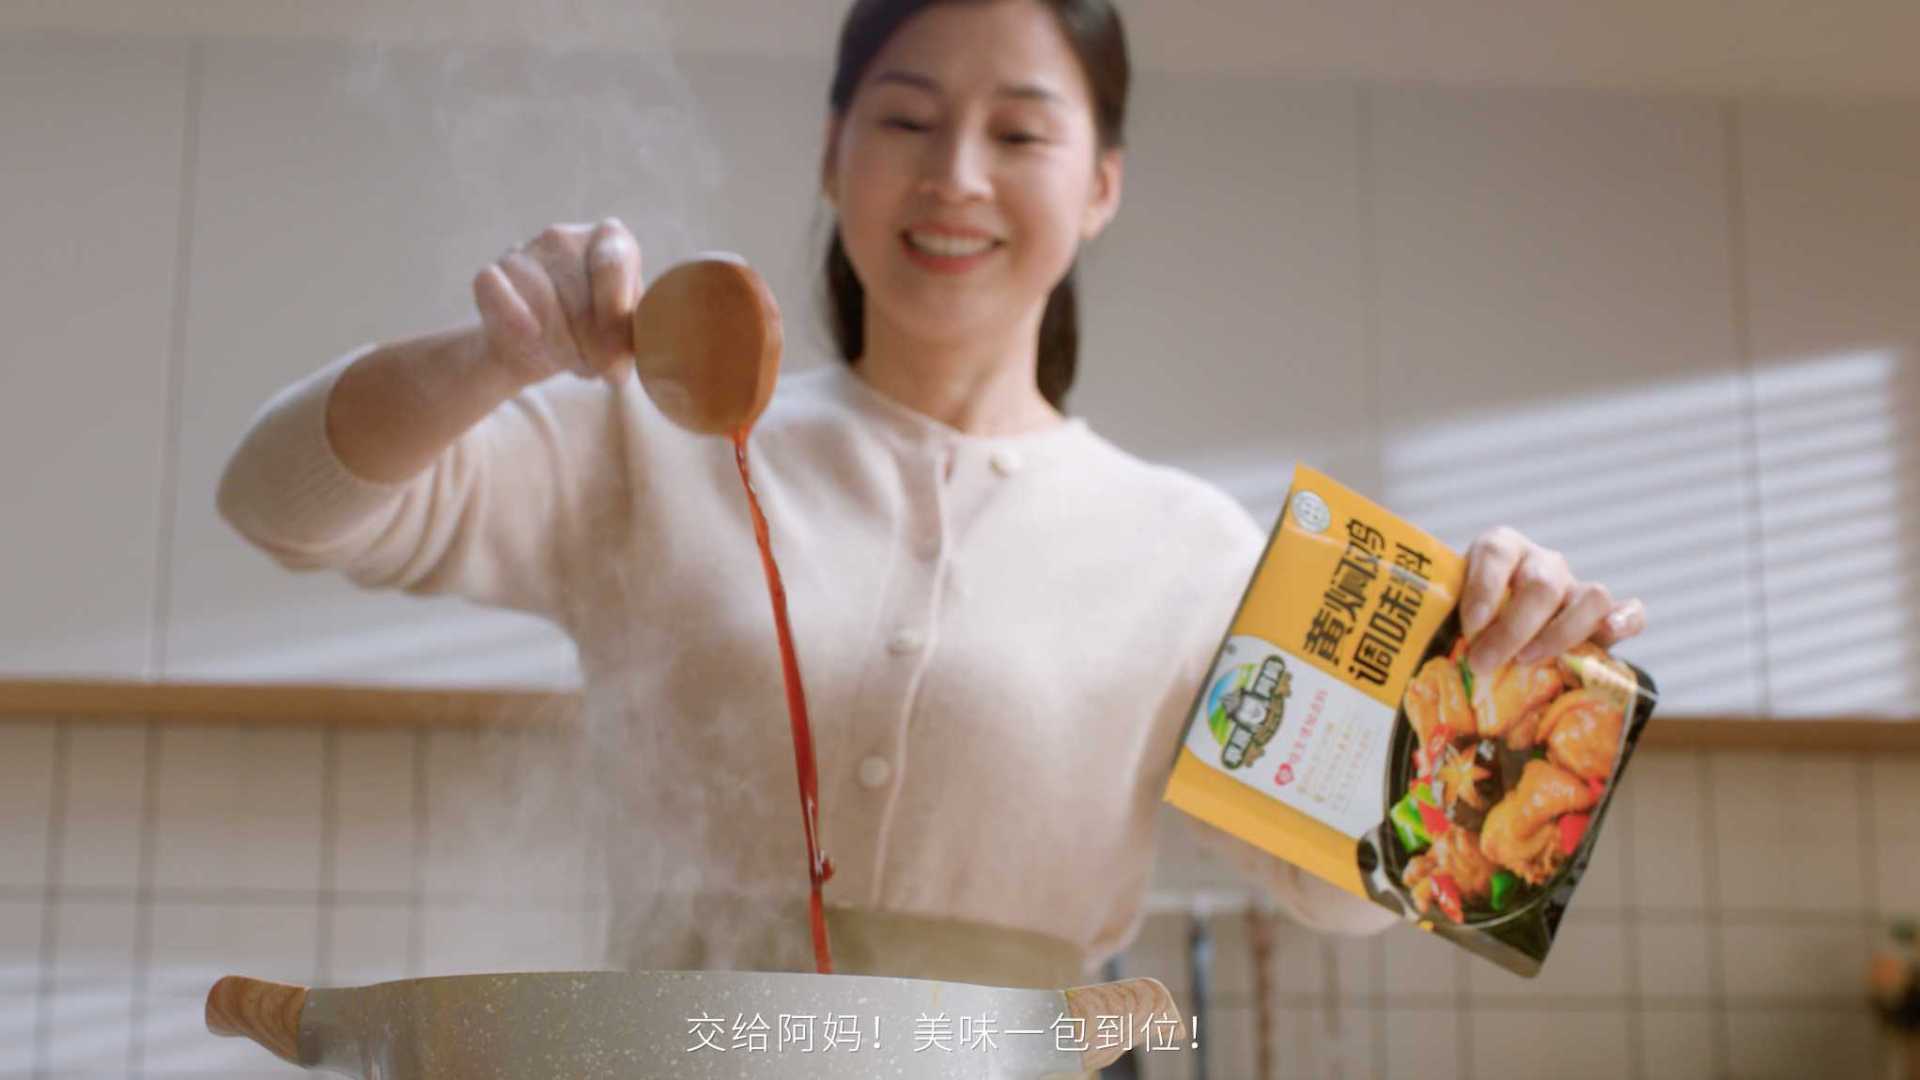 调味料系列广告片之黄焖鸡篇